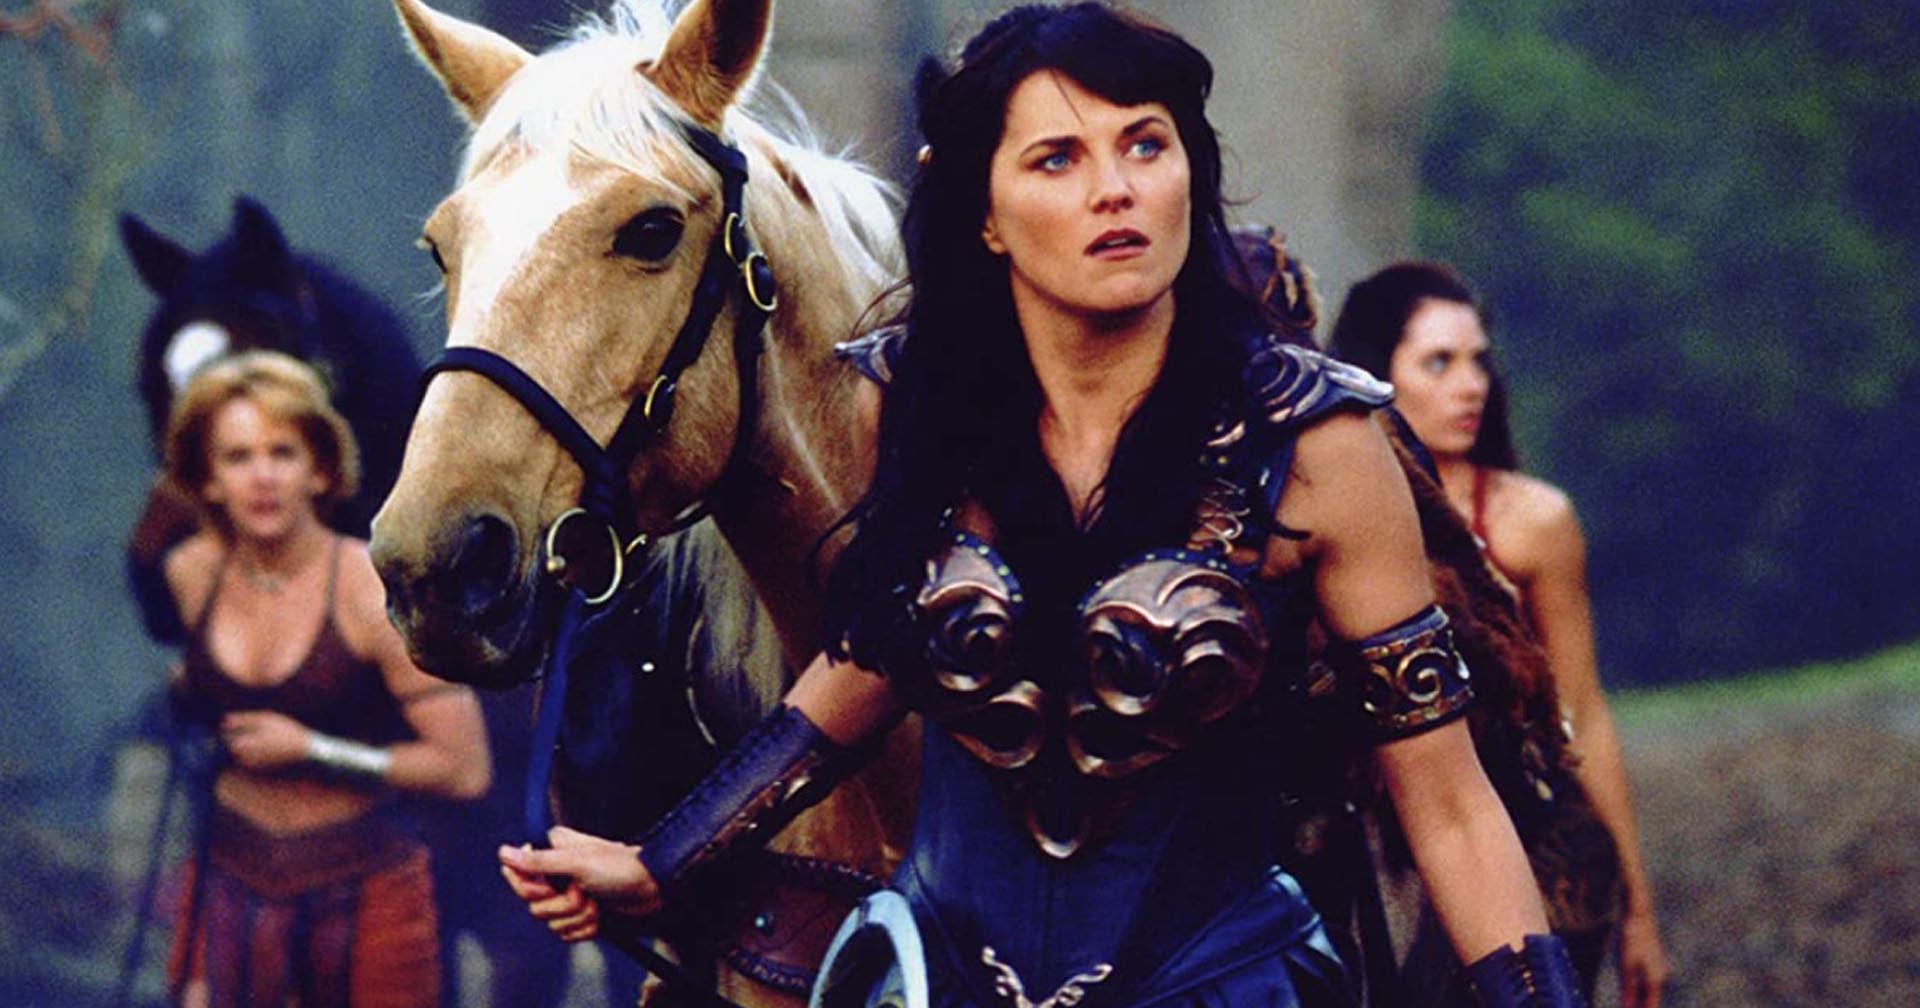 ลูซี่ ลอว์เลส พูดถึงความเป็นไปได้ในการรีบูต ‘Xena: Warrior Princess’